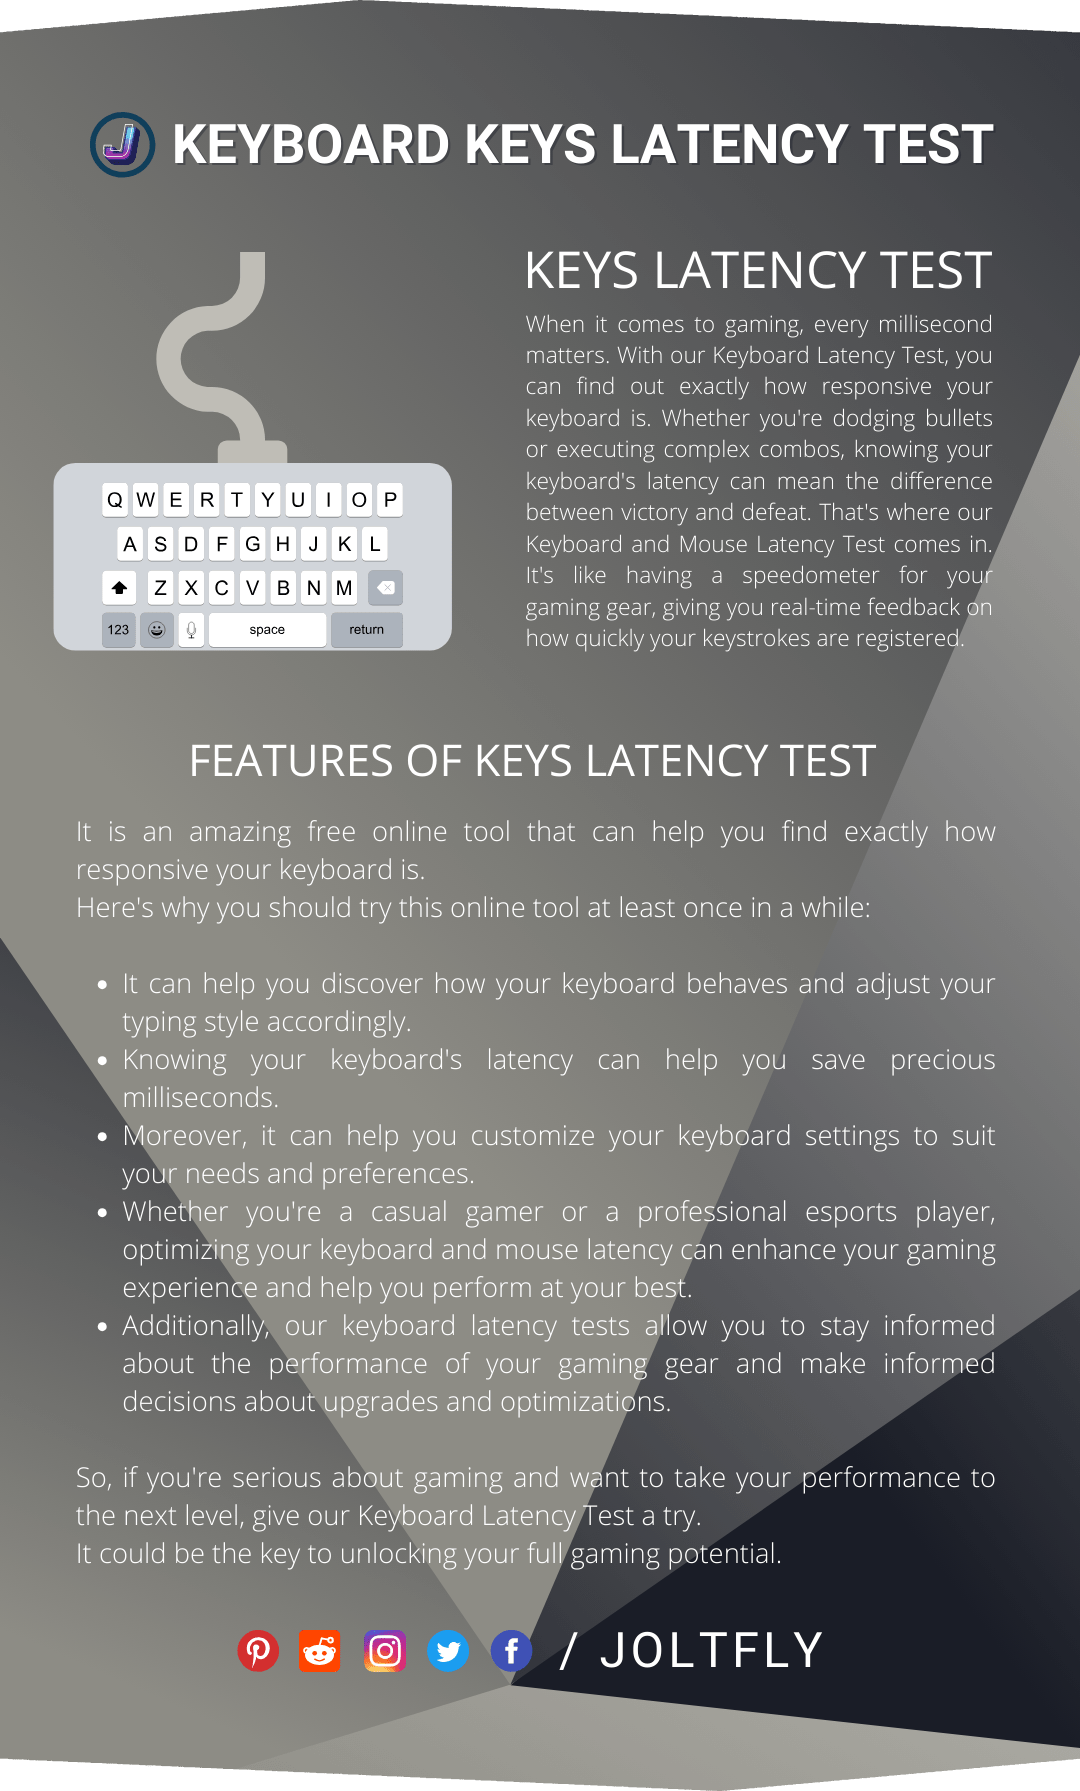 Keyboard Keys Latency Test-Features